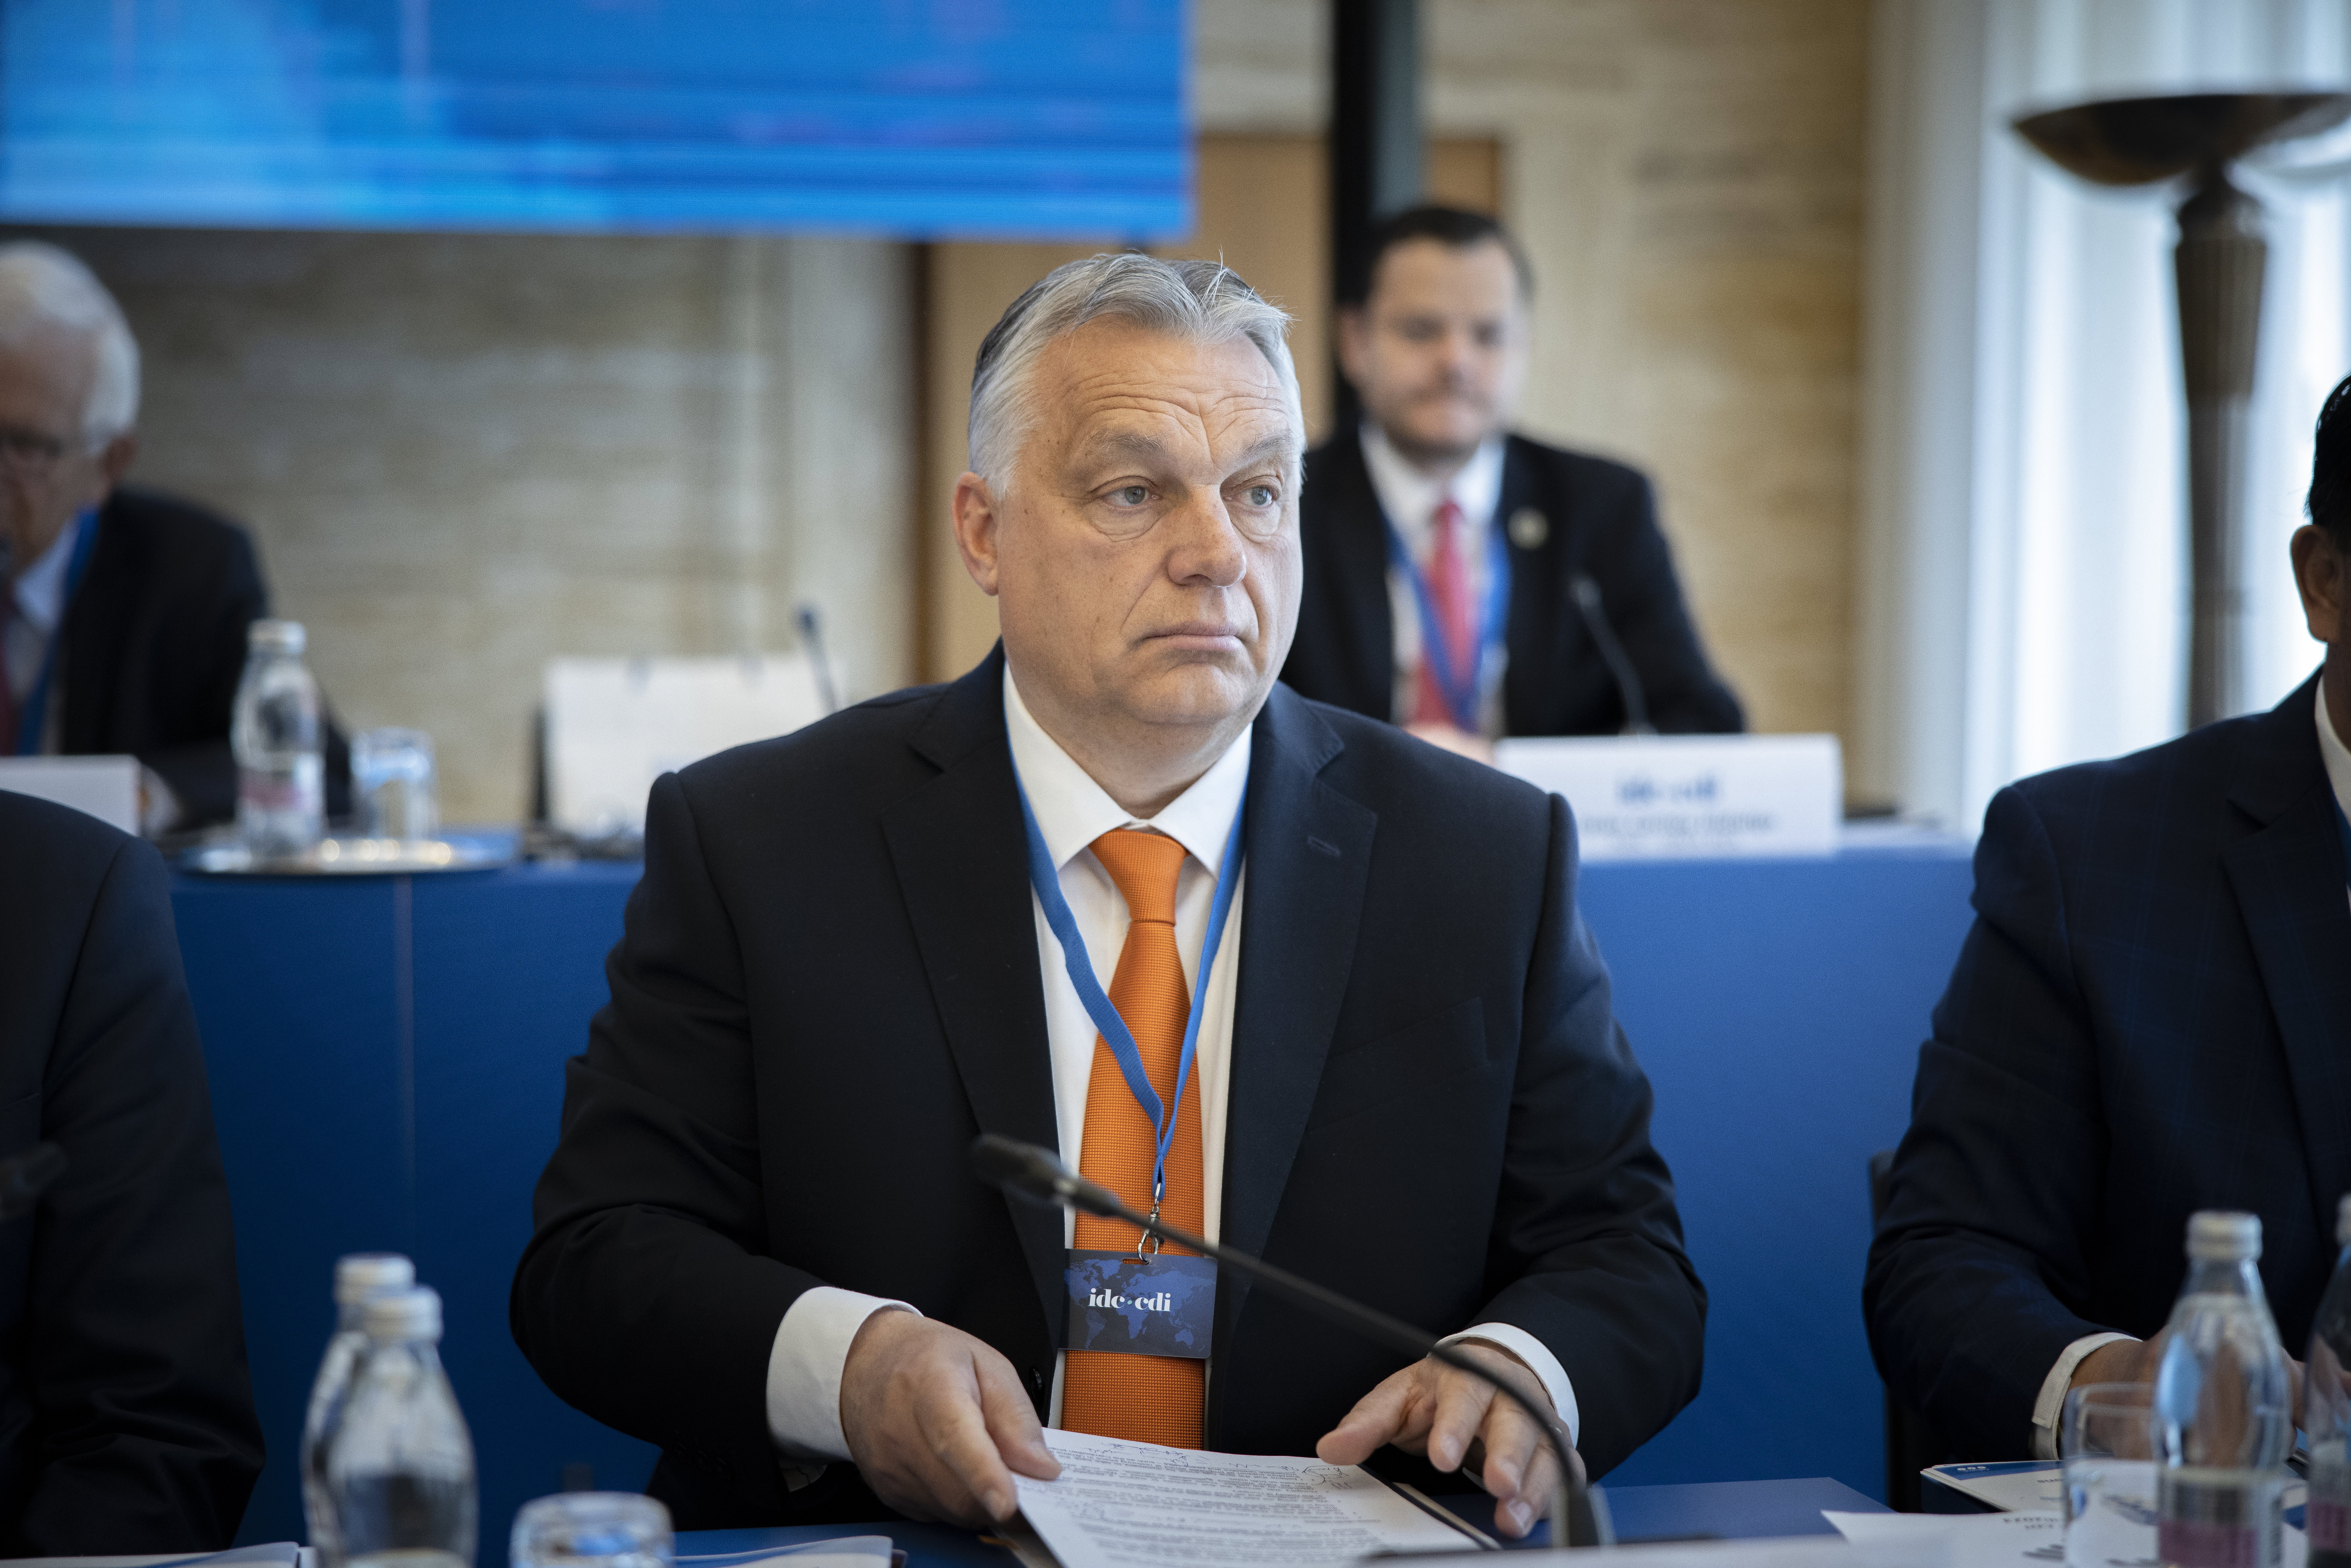 Hiába erőlködött nagyon az Orbán-kormány, a strasbourgi ítélet hatalmas fityiszt mutatott a magyar kabinetnek 